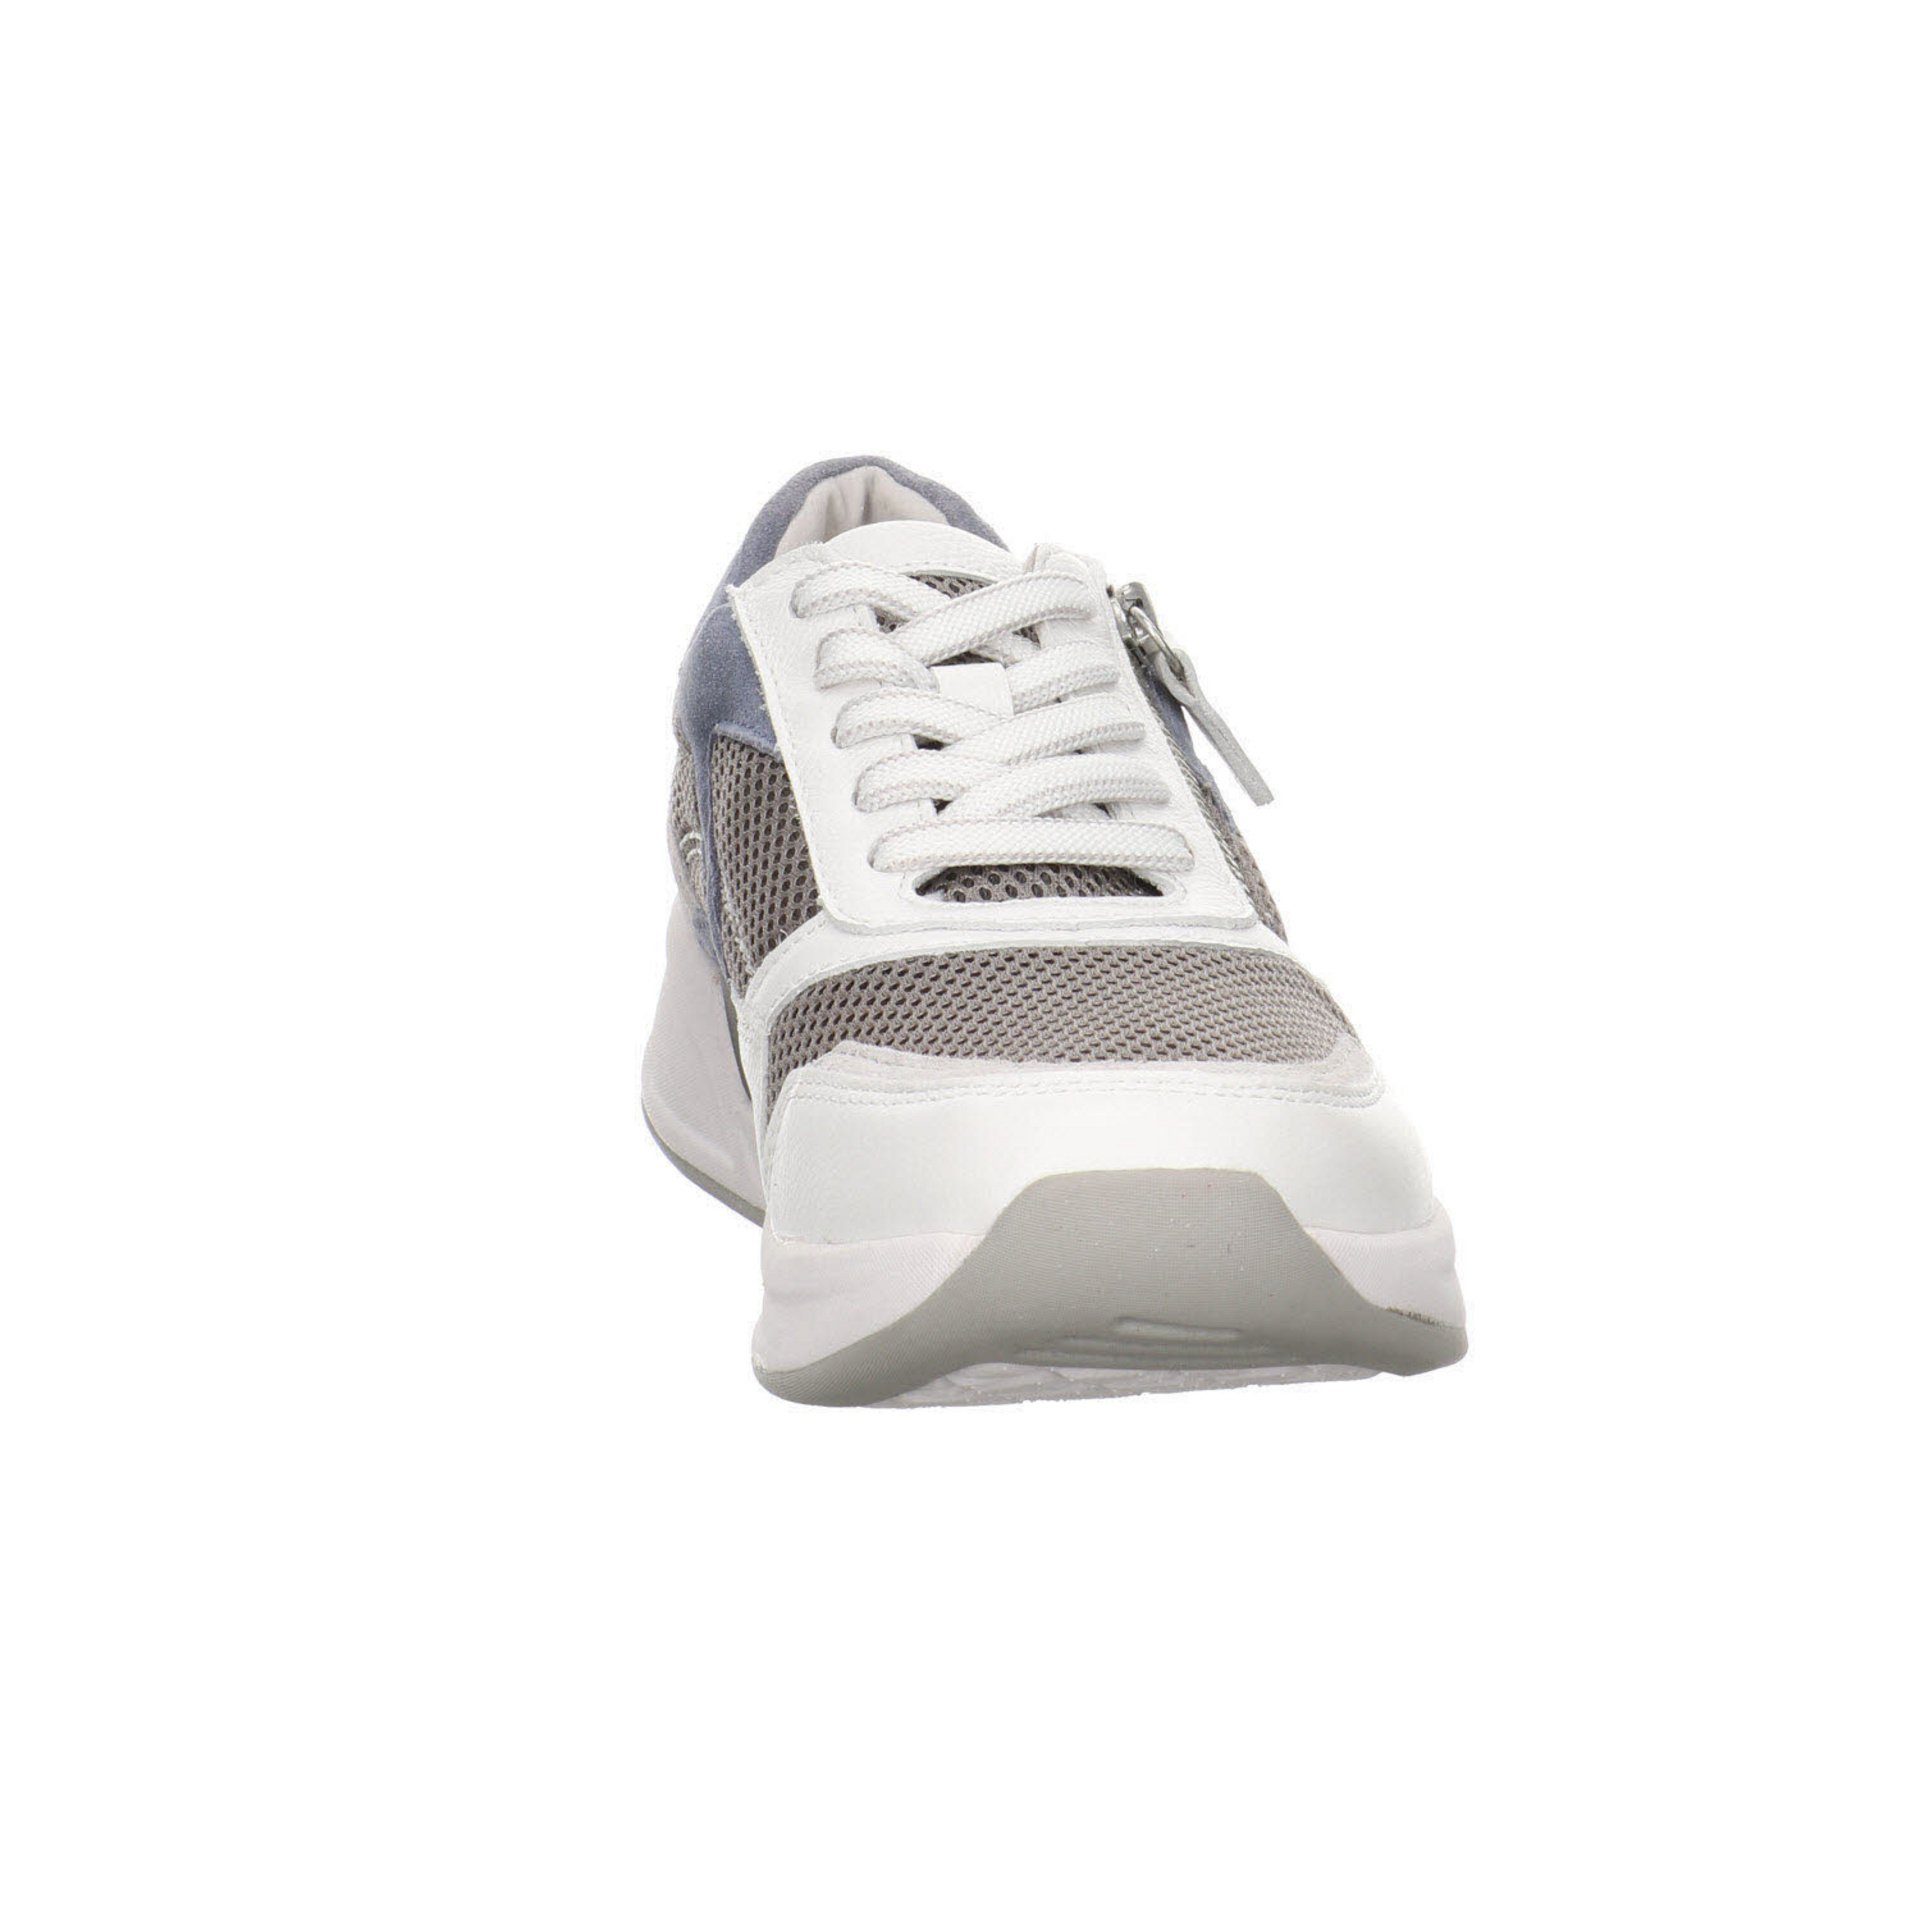 Schuhe Leder-/Textilkombination grau/weiss/nautic Sneaker / 41 Damen Schnürschuh Rollingsoft Sneaker Gabor